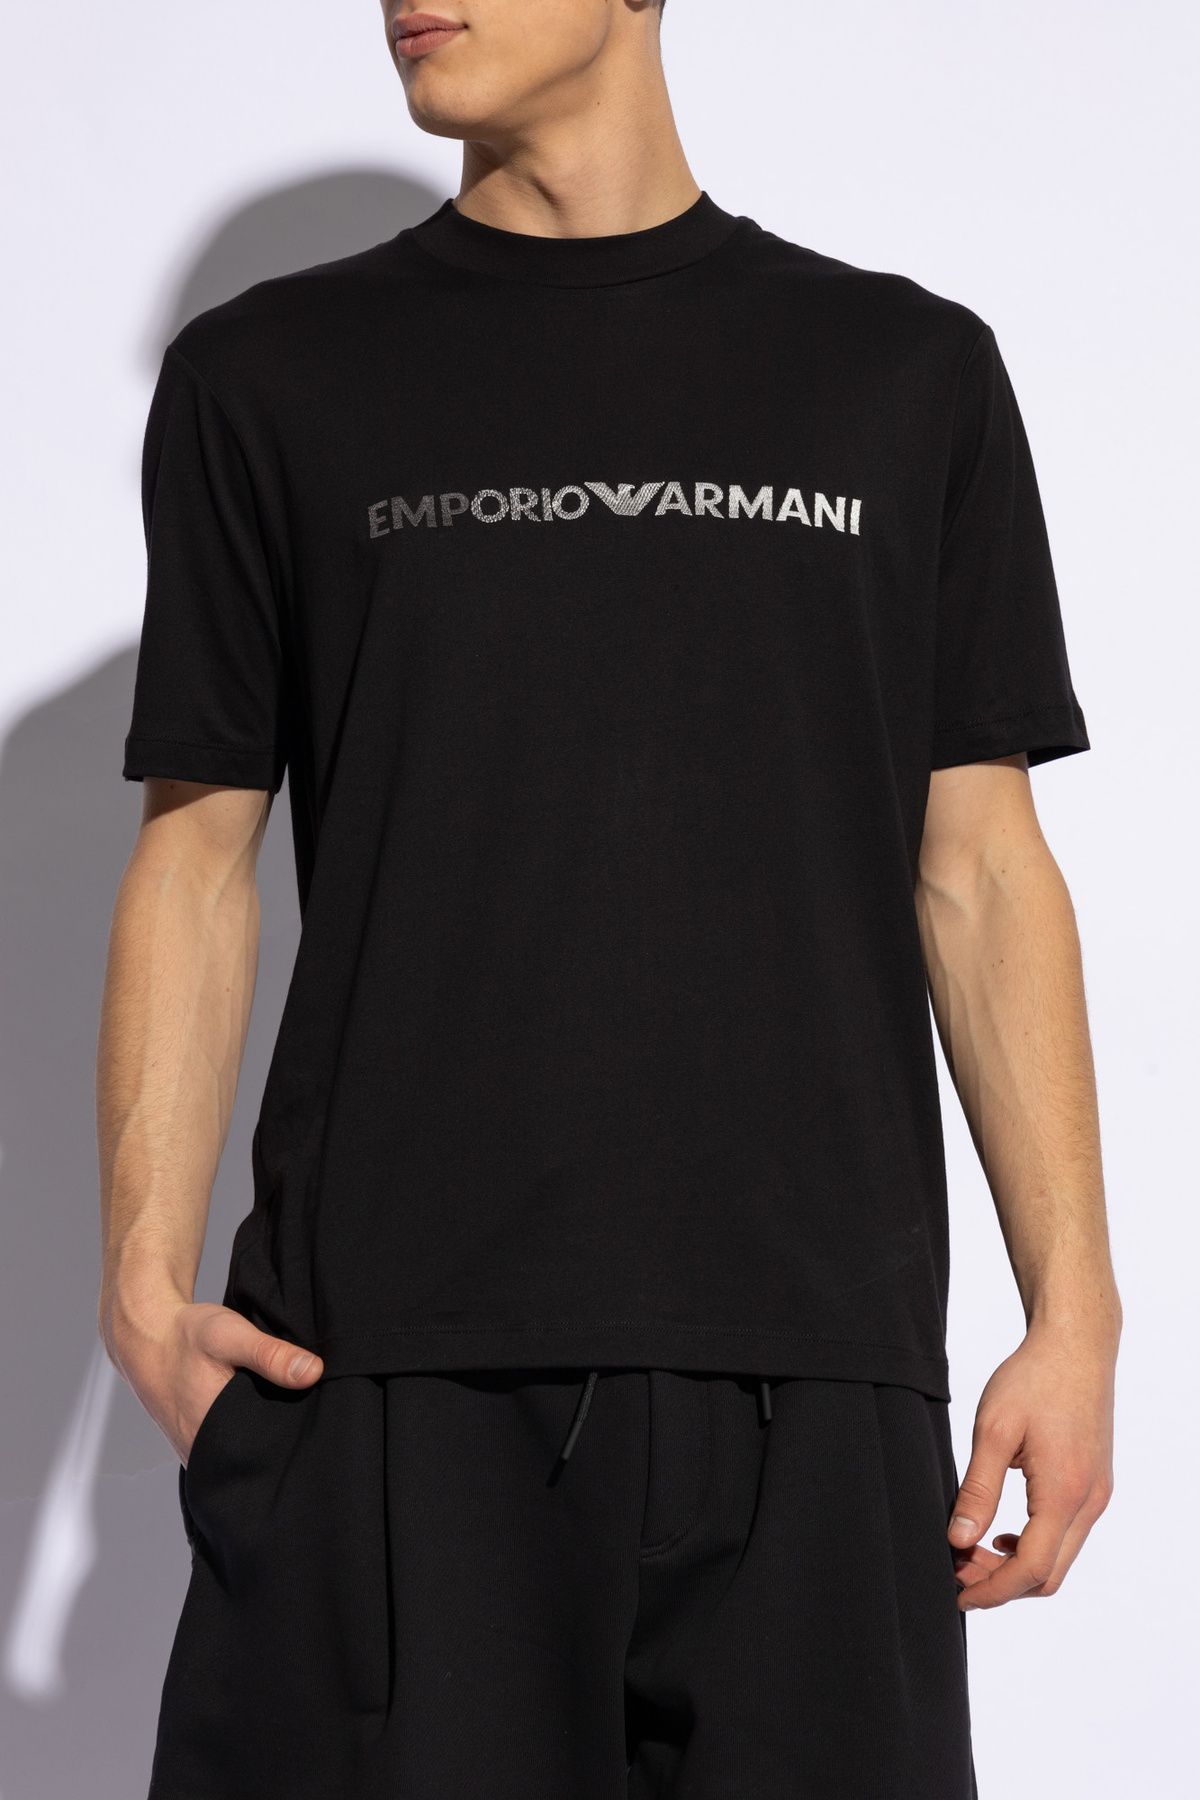 Emporio Armani Erkek Pamuklu Kısa Boy Rahat Kesim Günlük Siyah1 T-Shirt 3D1TG3 1JPZZ-0057